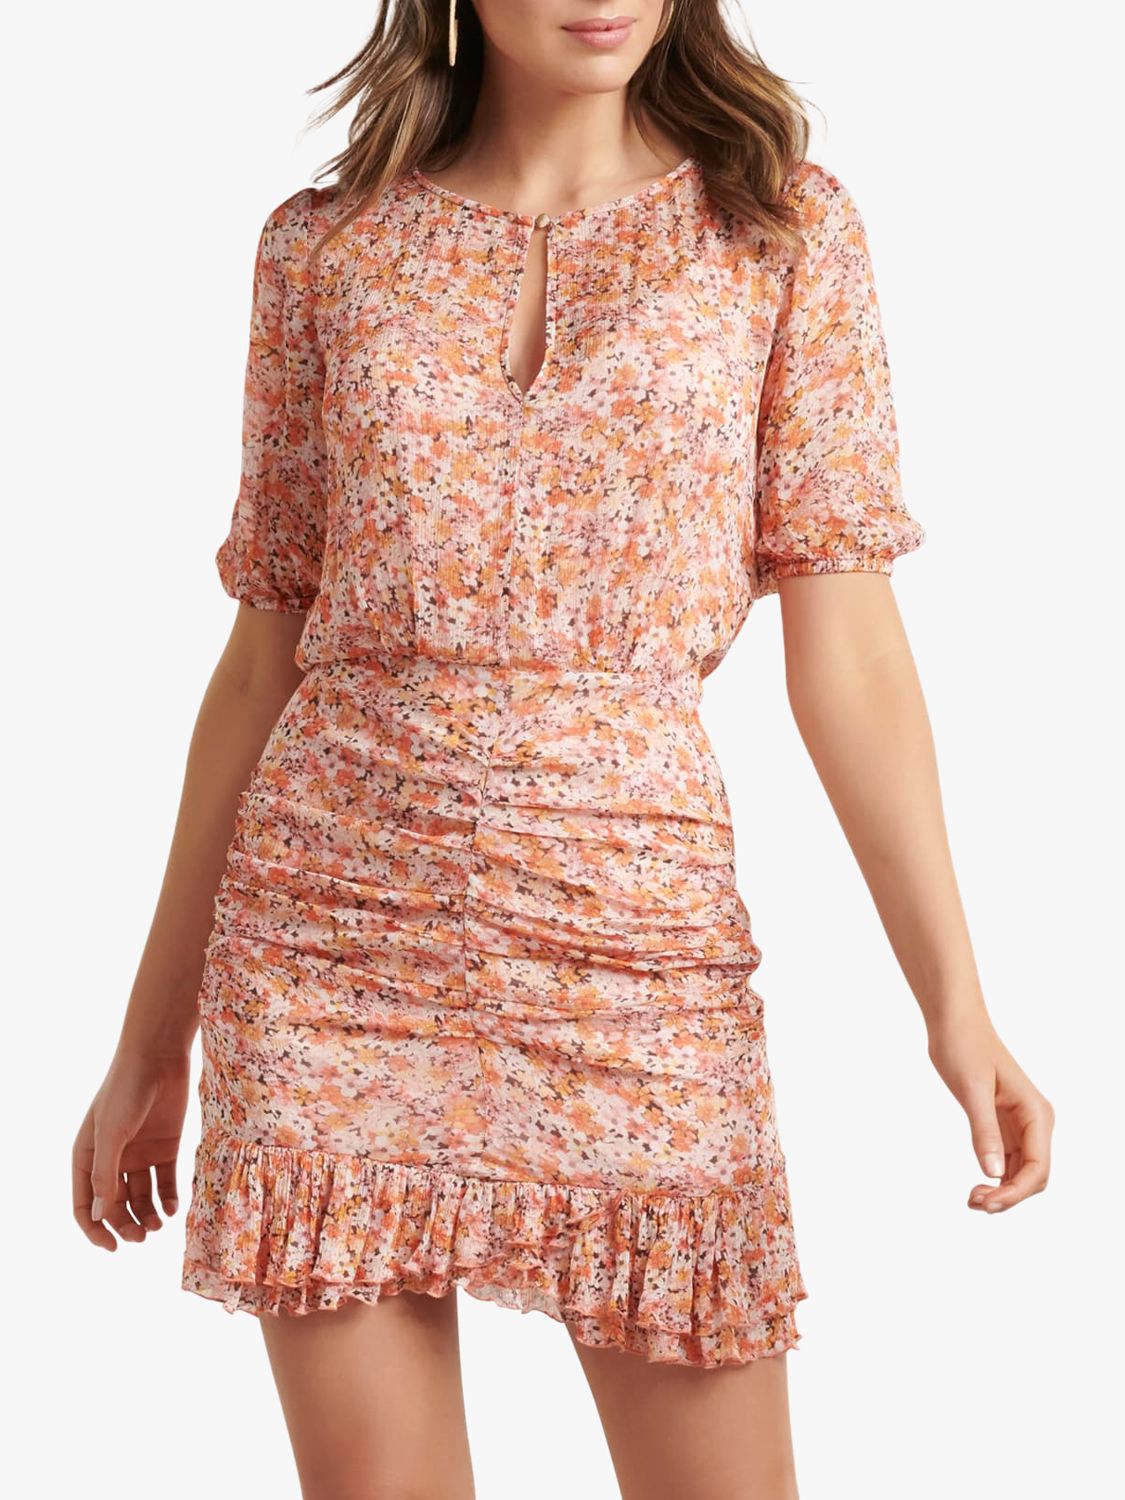 1950s inspired dresses